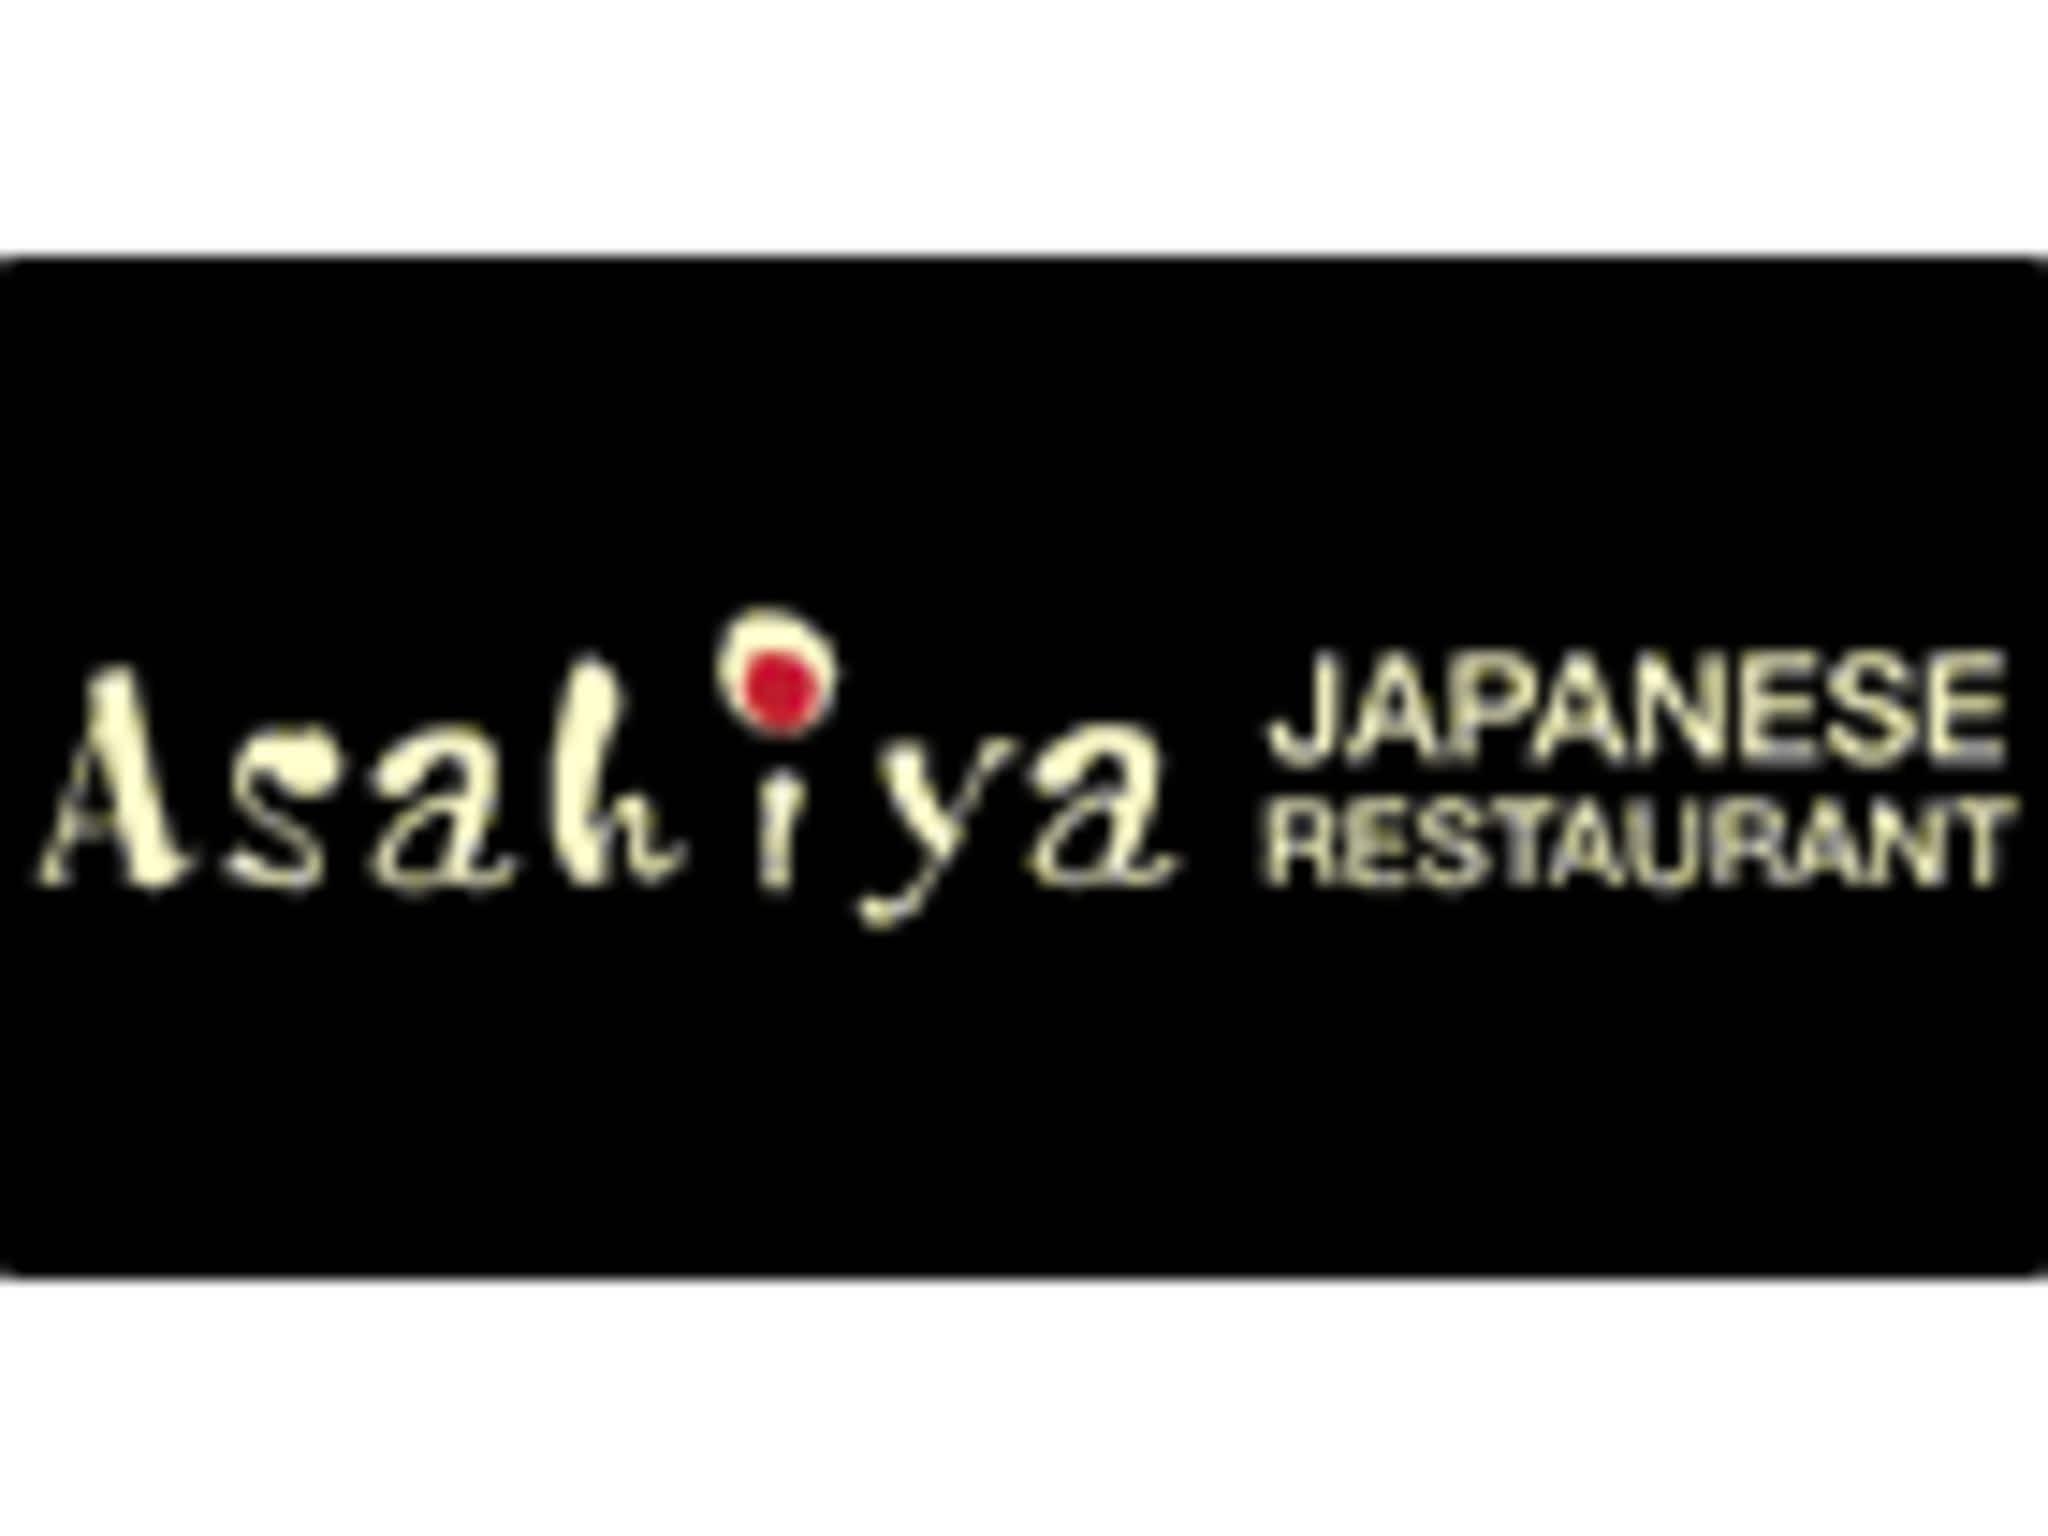 photo Asahiya Japanese Restaurant